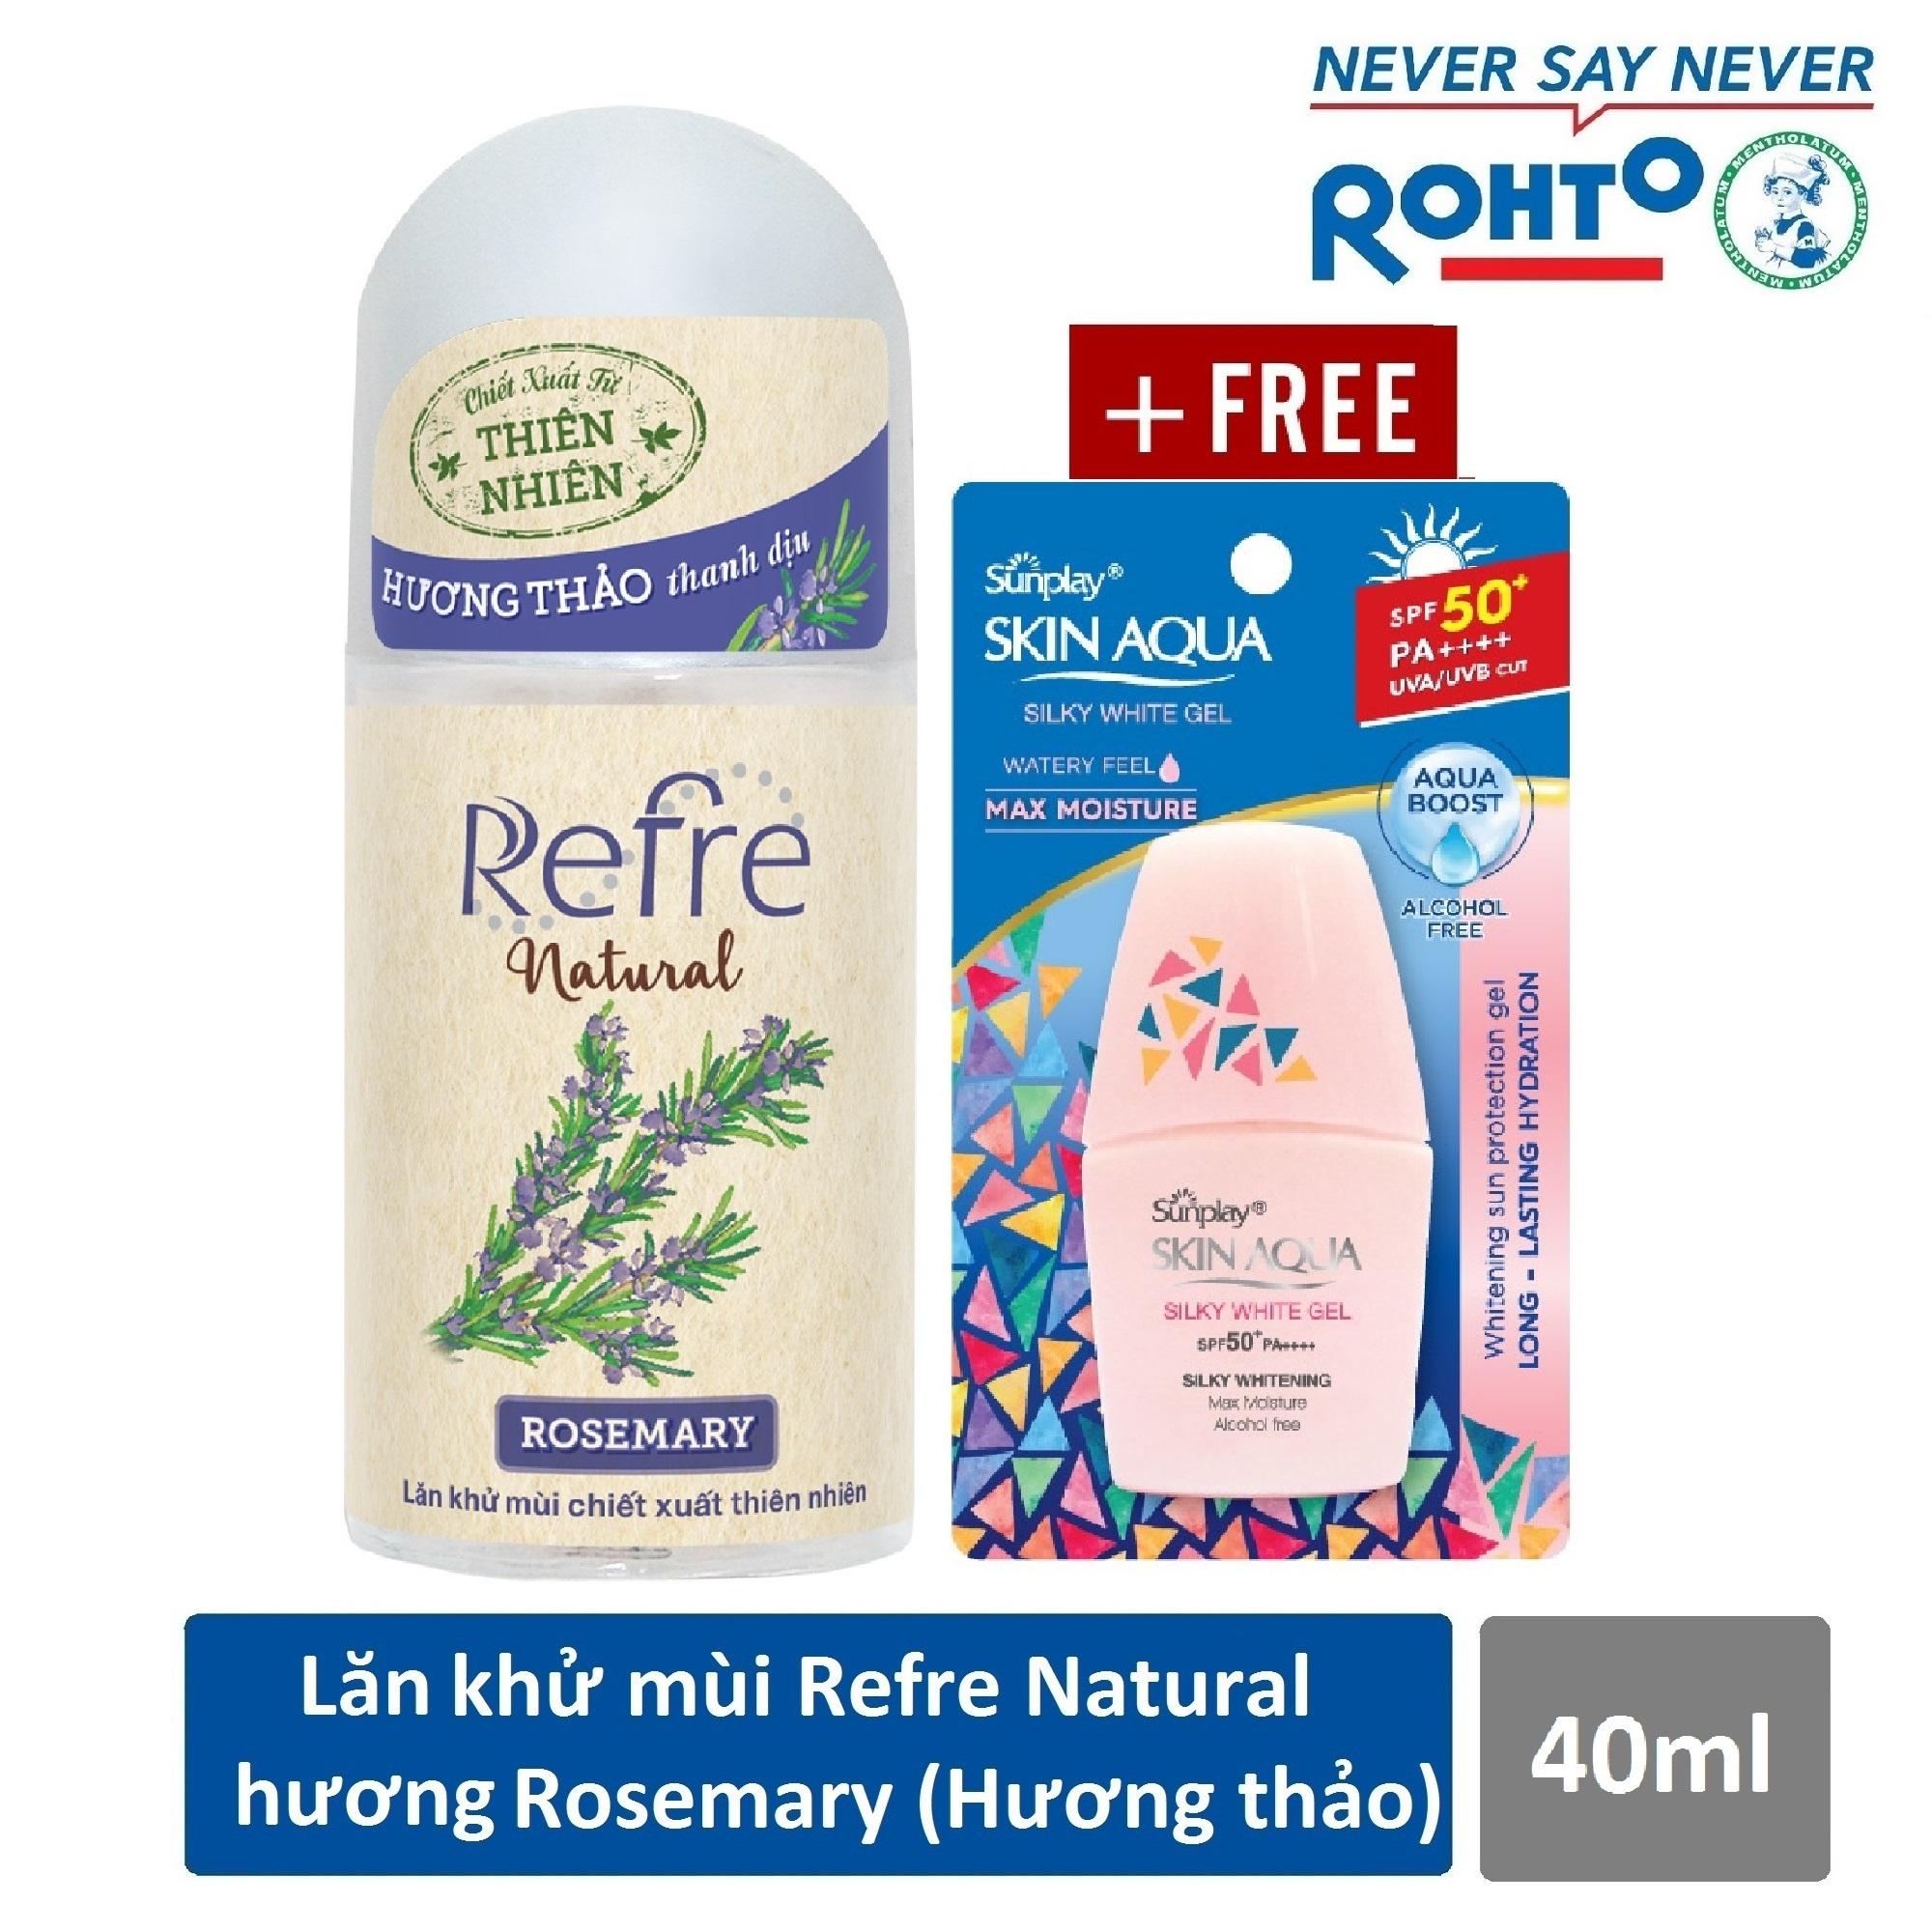 Lăn khử mùi Refre Natural Rosemary Hương Hương Thảo 40ml + Tặng Sữa chống nắng Sunplay Skin Aqua 6g